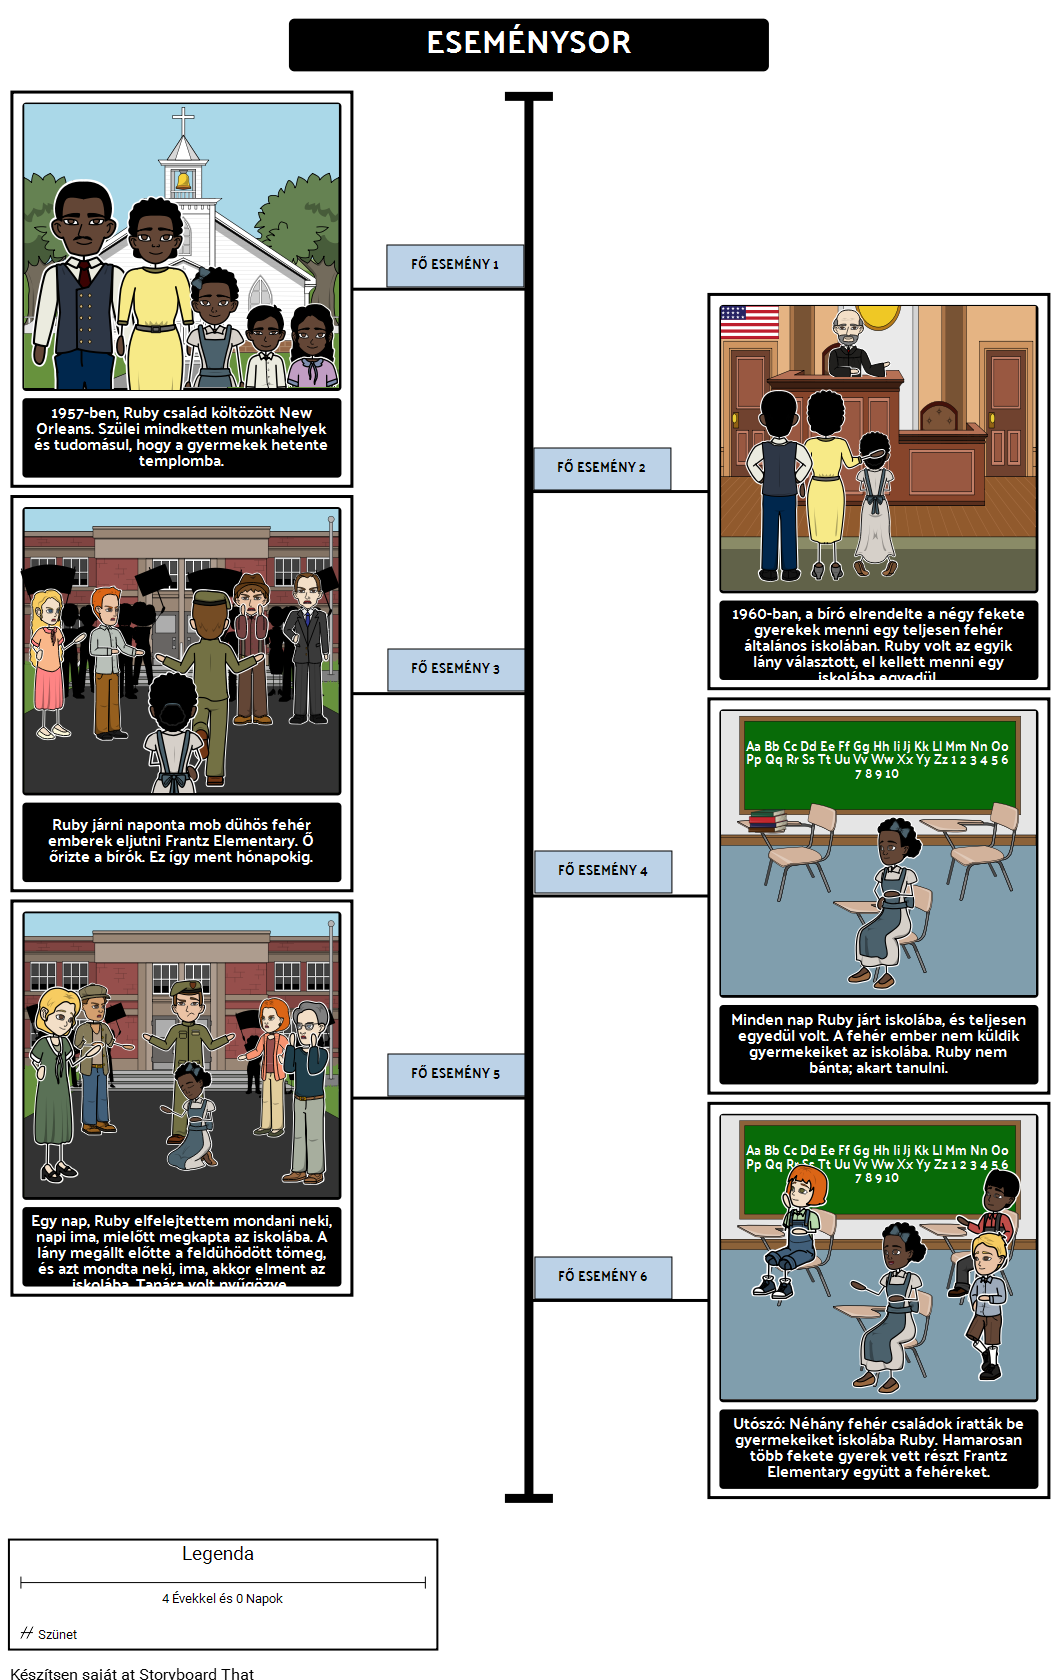 A Történet a Ruby Bridges Timeline